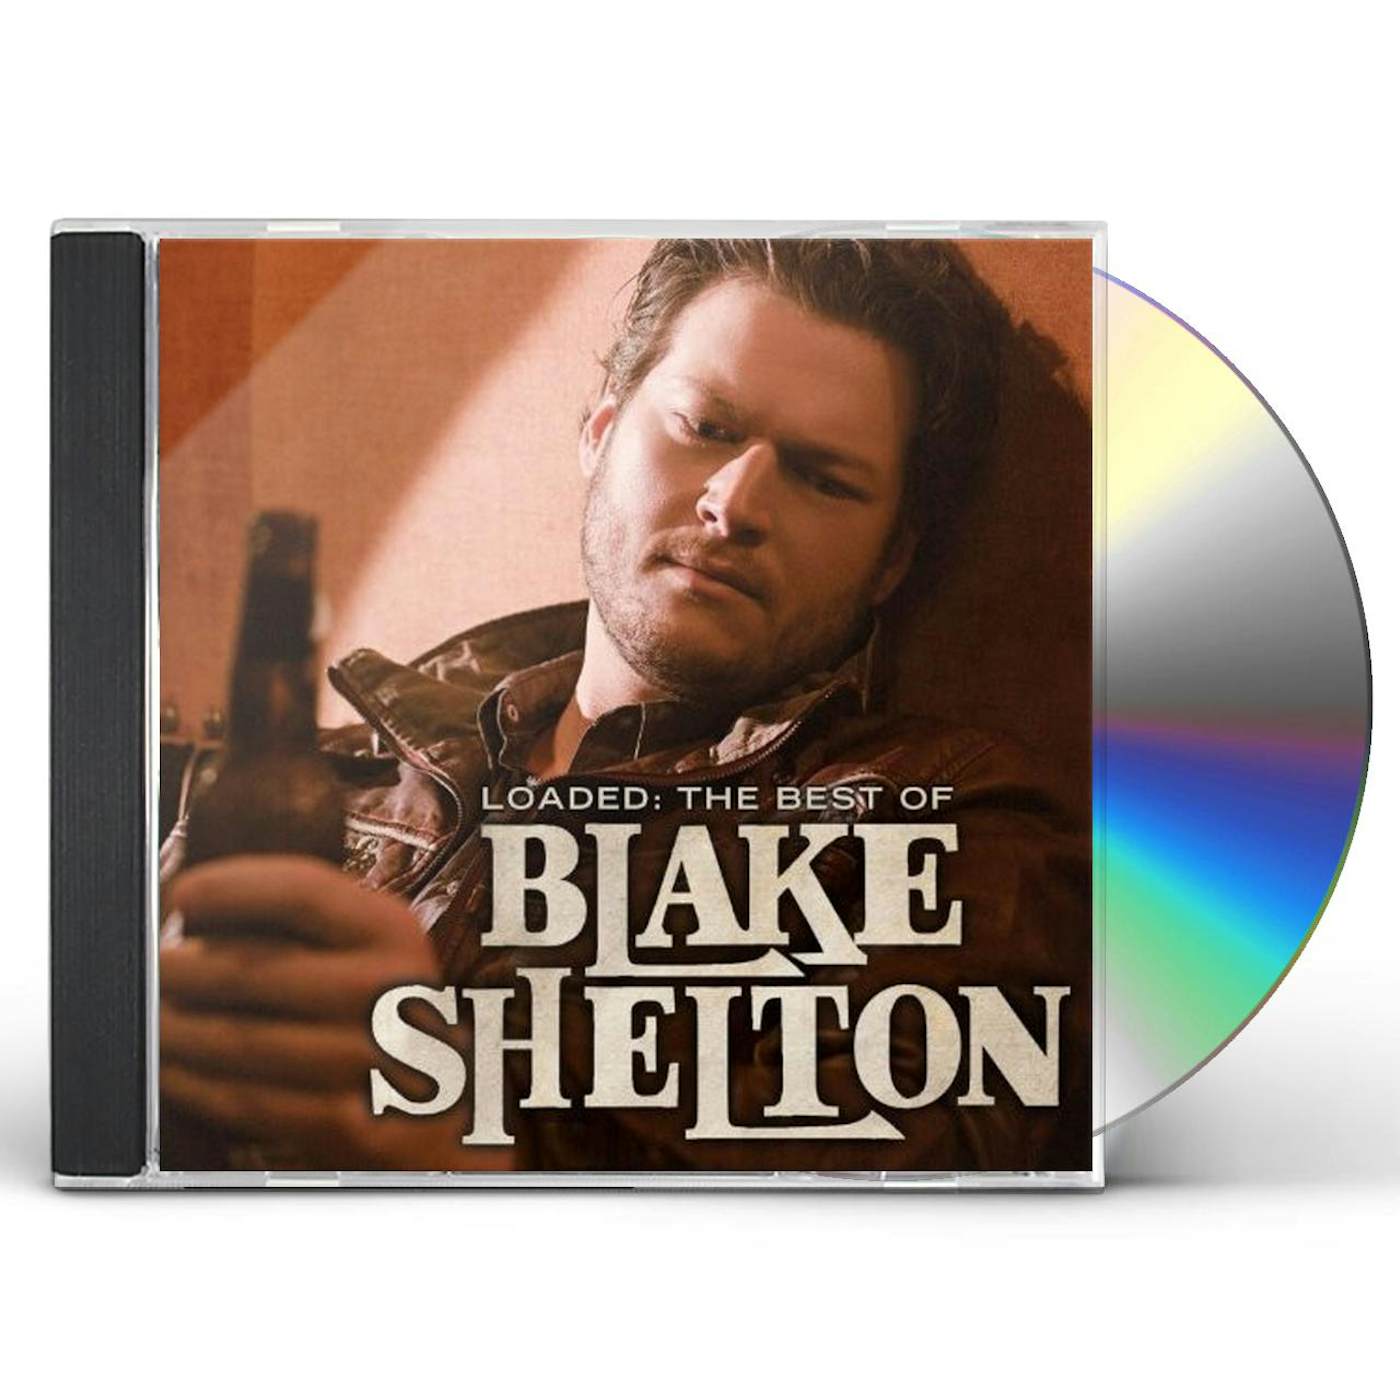 LOADED: THE BEST OF BLAKE SHELTON CD